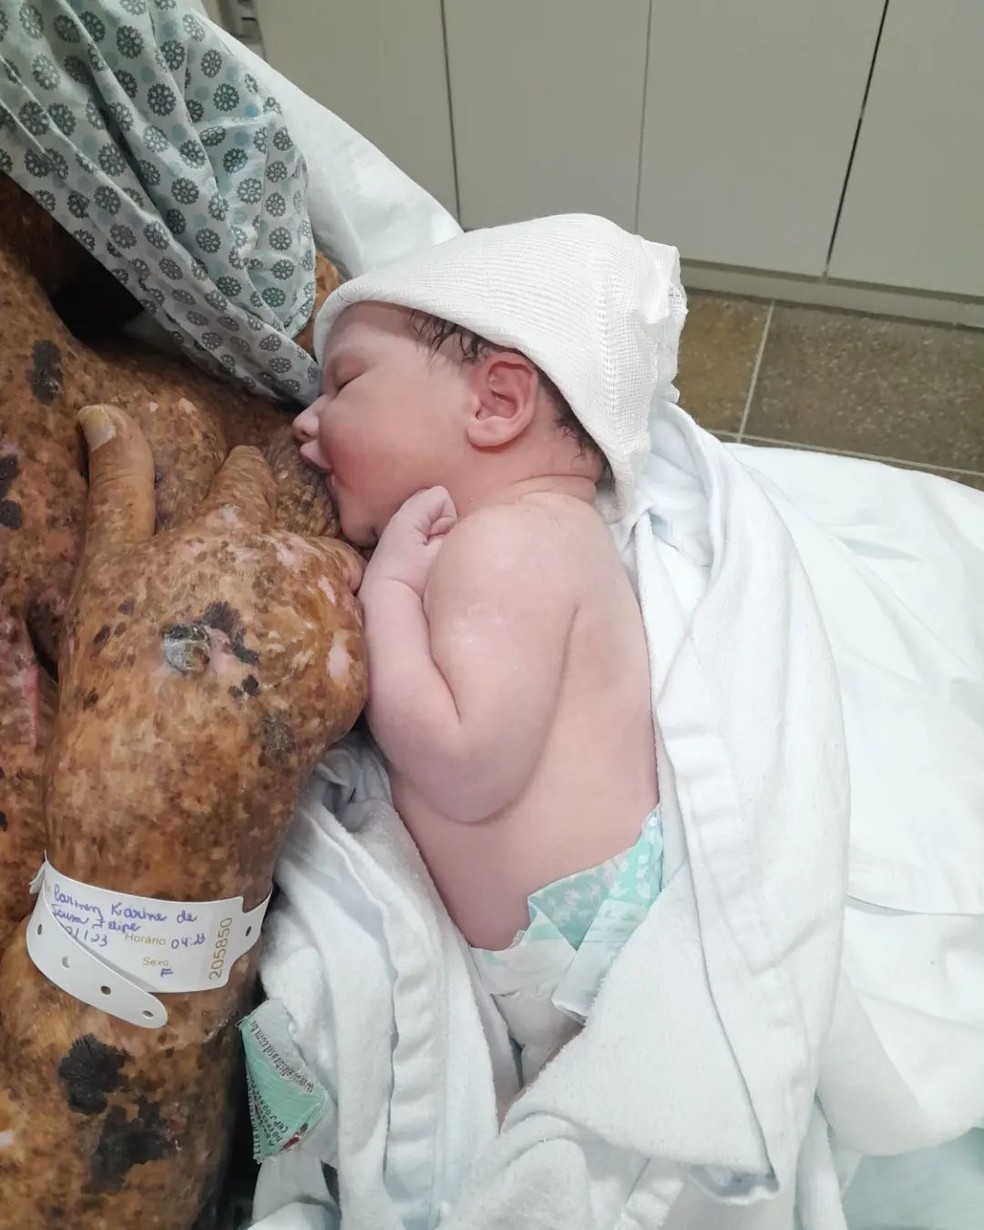 Káh Felipe dá à luz Zaya, sua filha com Edmilson Alcântara — Foto: Reprodução/Instagram